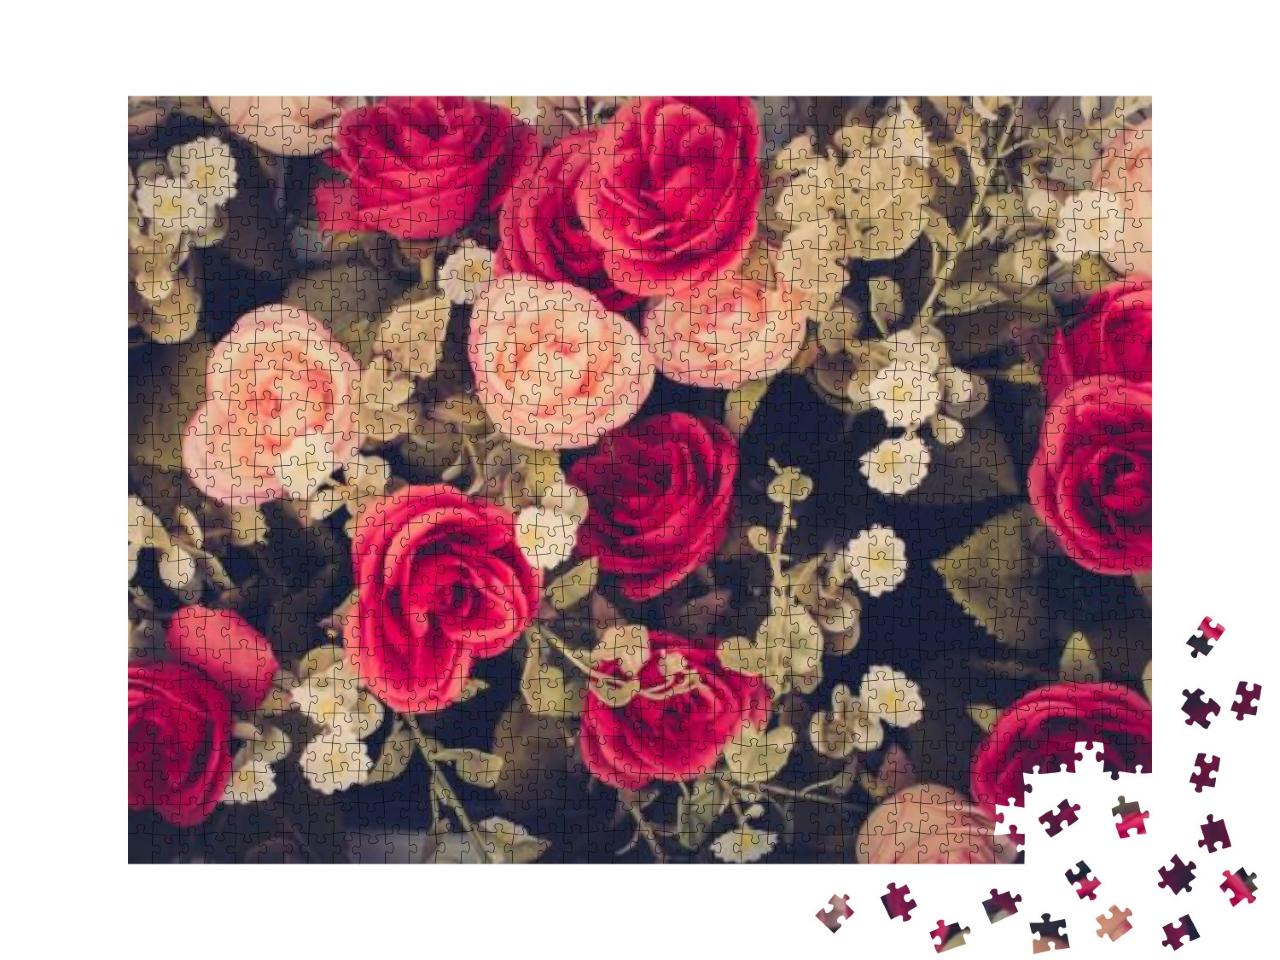 Puzzle 1000 Teile „Vintage Blumen in Rosa und Rot, Rosen“